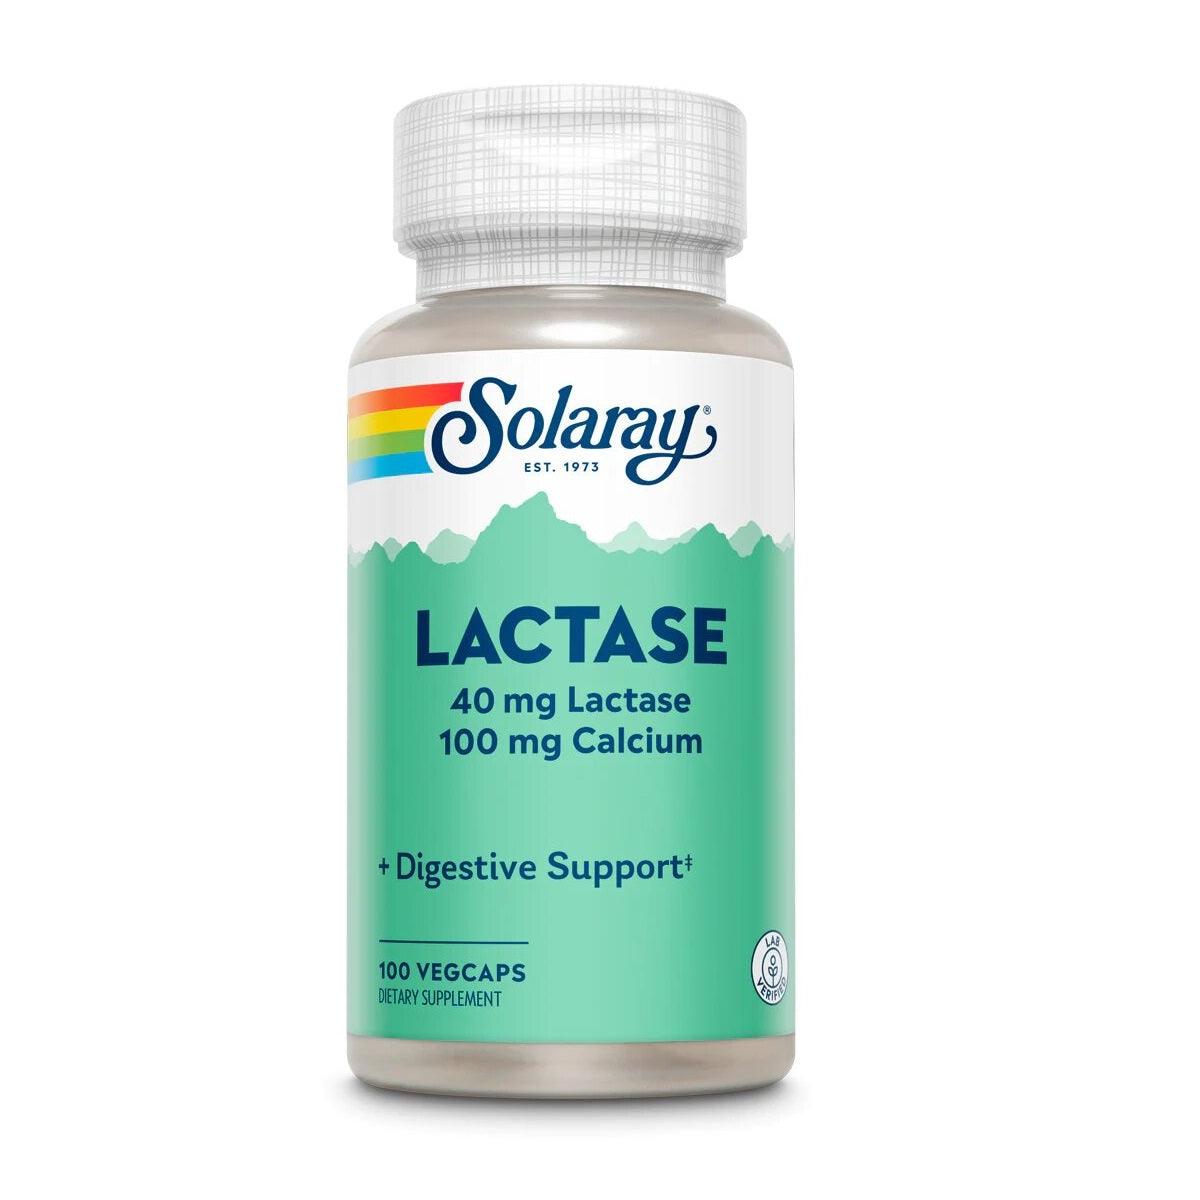 Solaray - Lactase - ORAS OFFICIAL